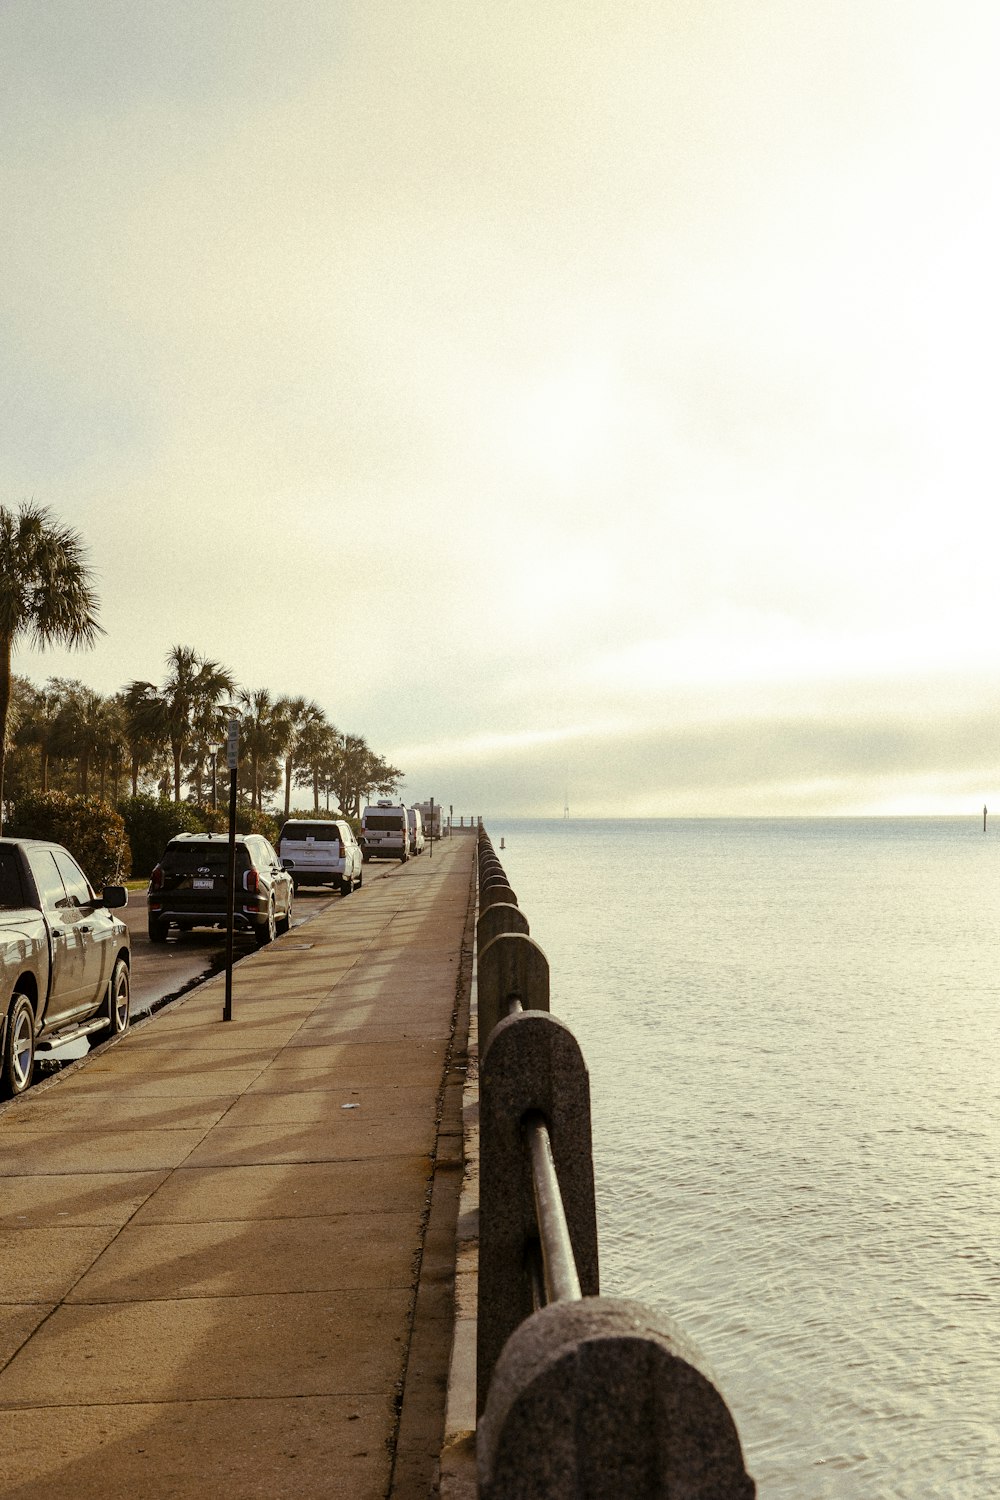 Los coches están aparcados a lo largo de la orilla del agua